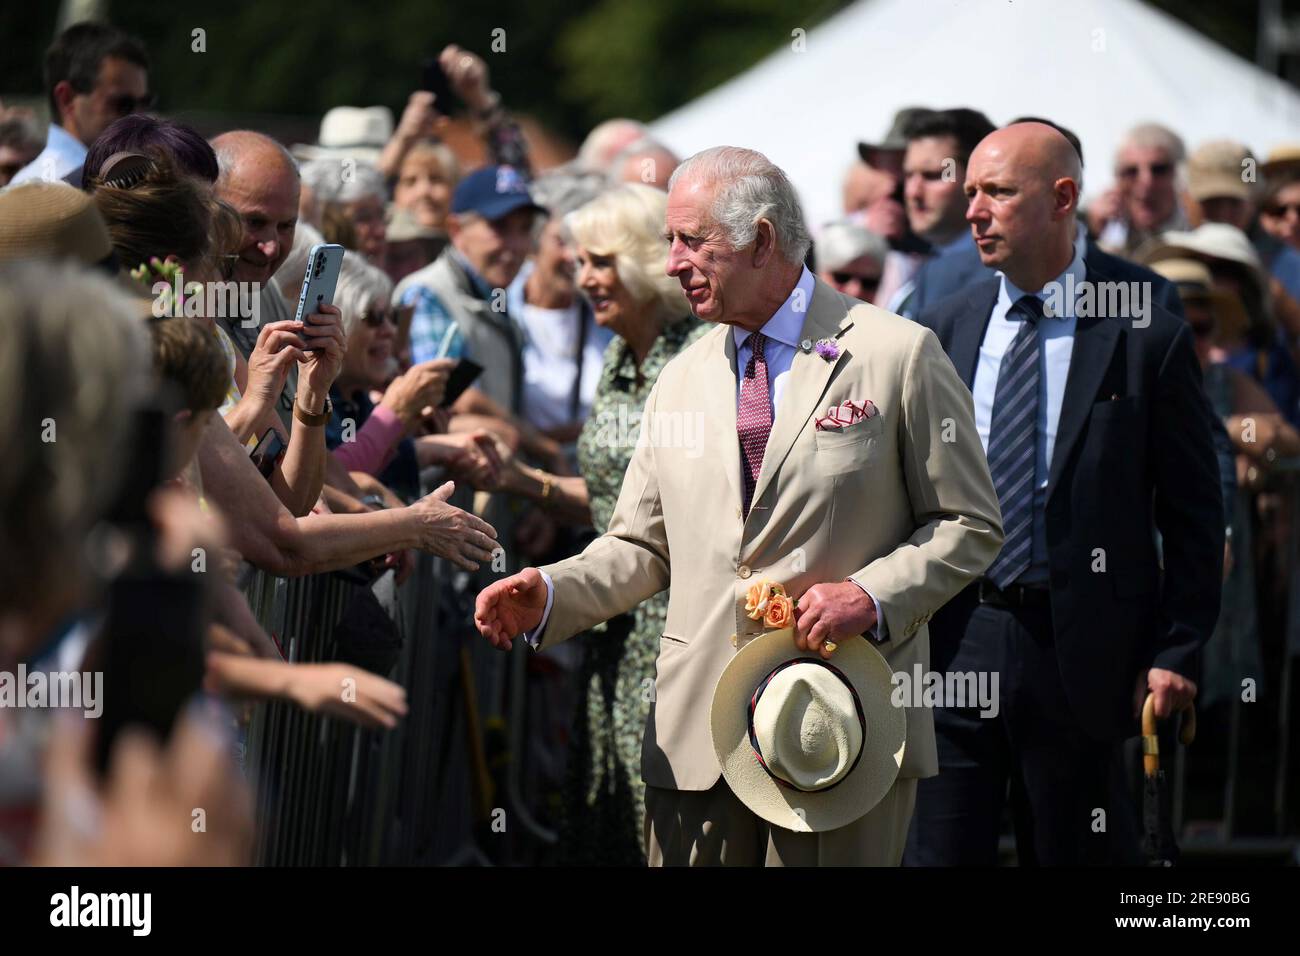 König Charles III. Und Königin Camilla treffen Mitglieder der Öffentlichkeit bei einem Besuch der Sandringham Flower Show im Sandringham House in Norfolk. Bilddatum: Mittwoch, 26. Juli 2023. Stockfoto